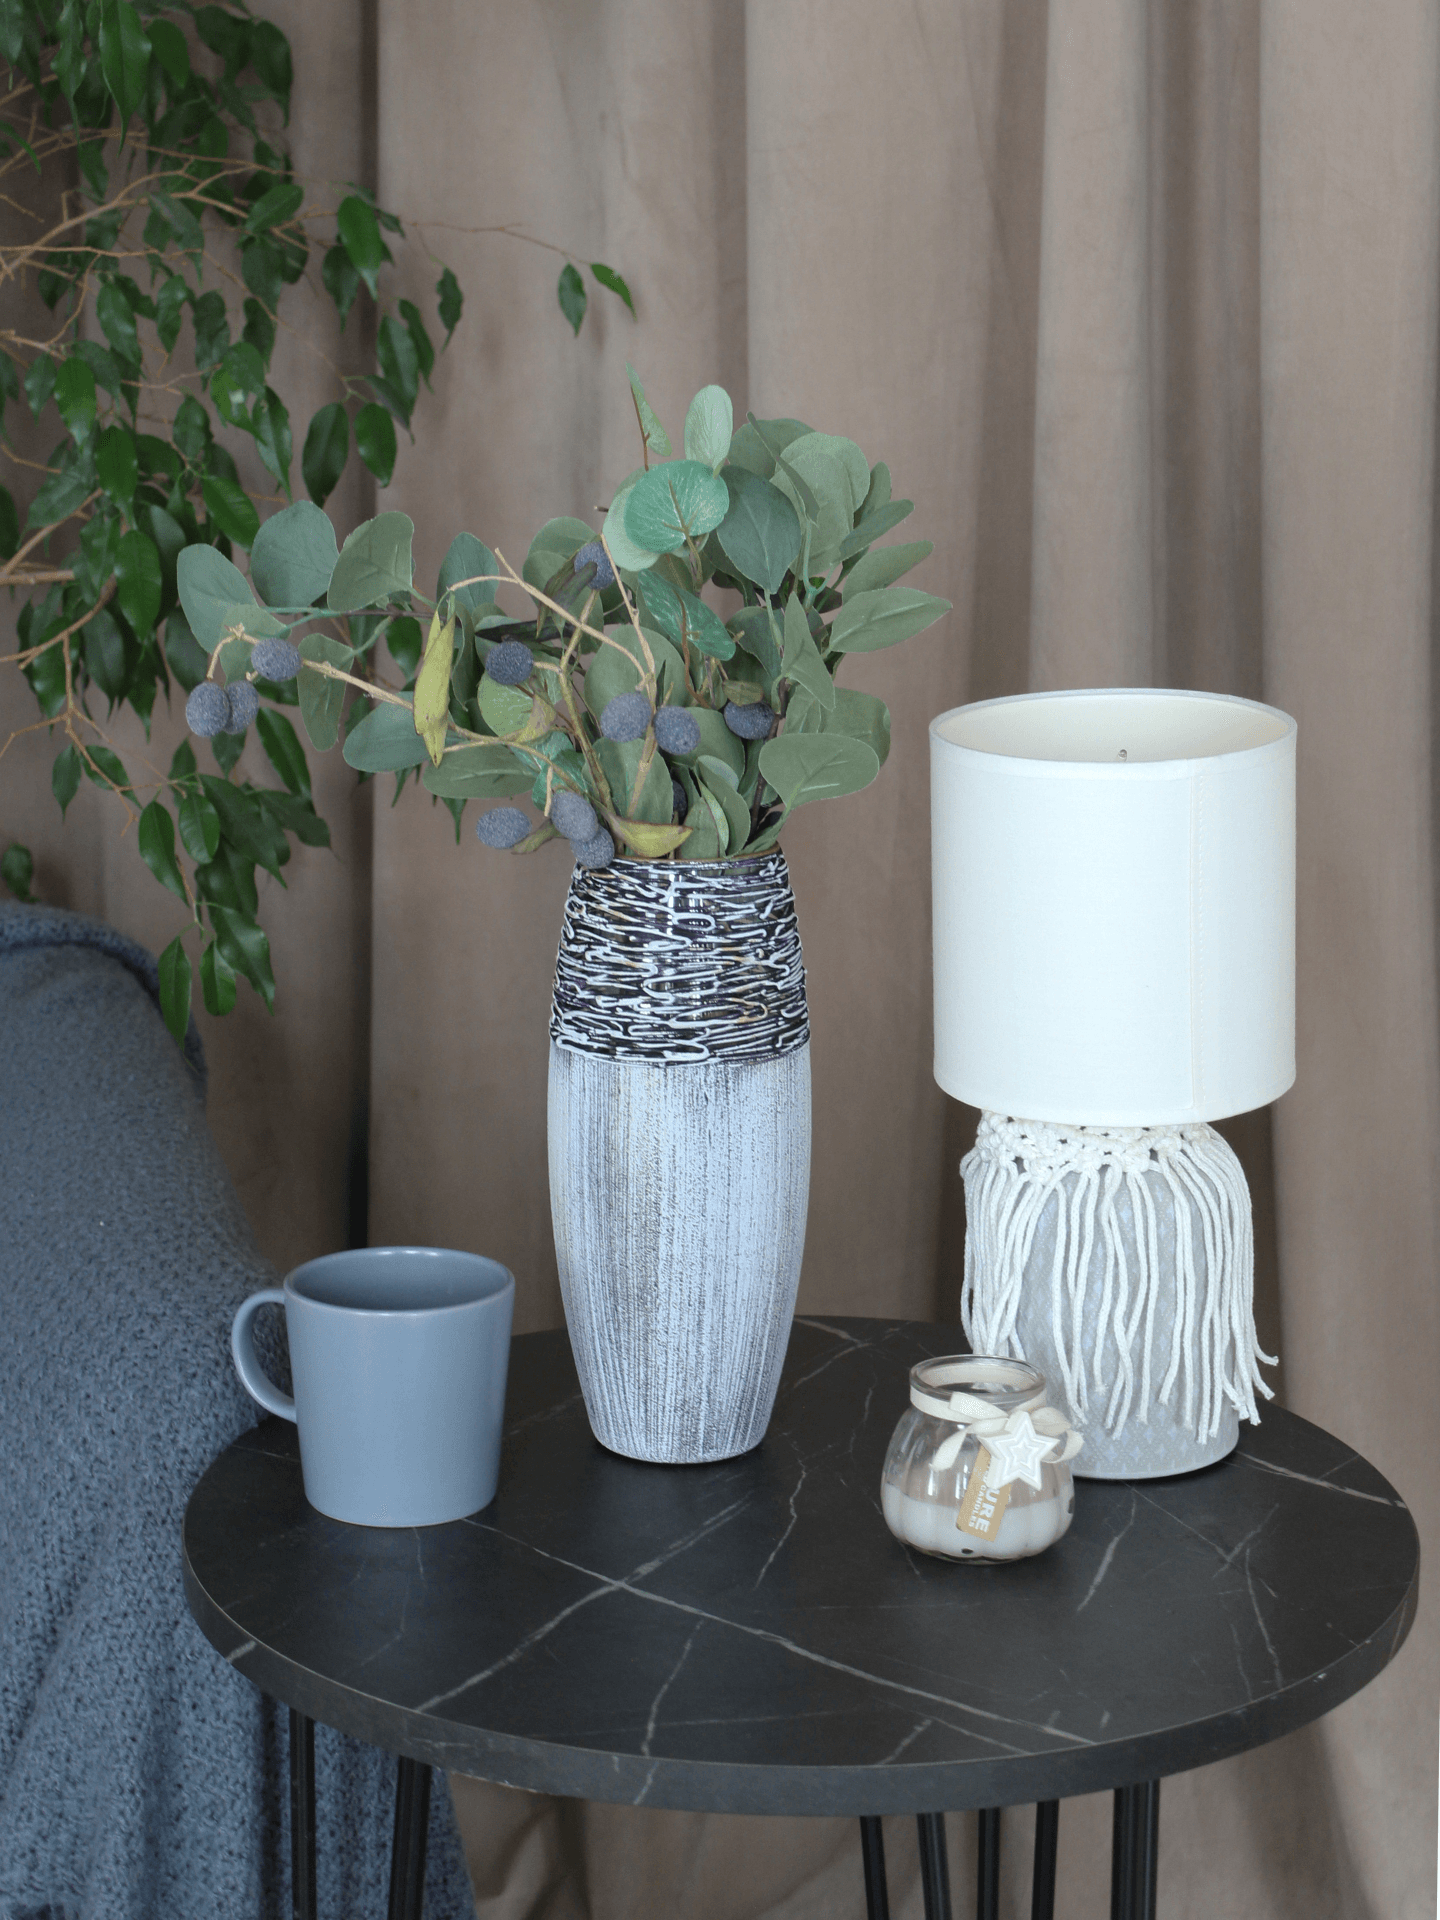 Handpainted Glass Vase for Flowers | Art Glass Vase | Interior Design Home Decor | Table vase 10 in | 7736/250/sh228  